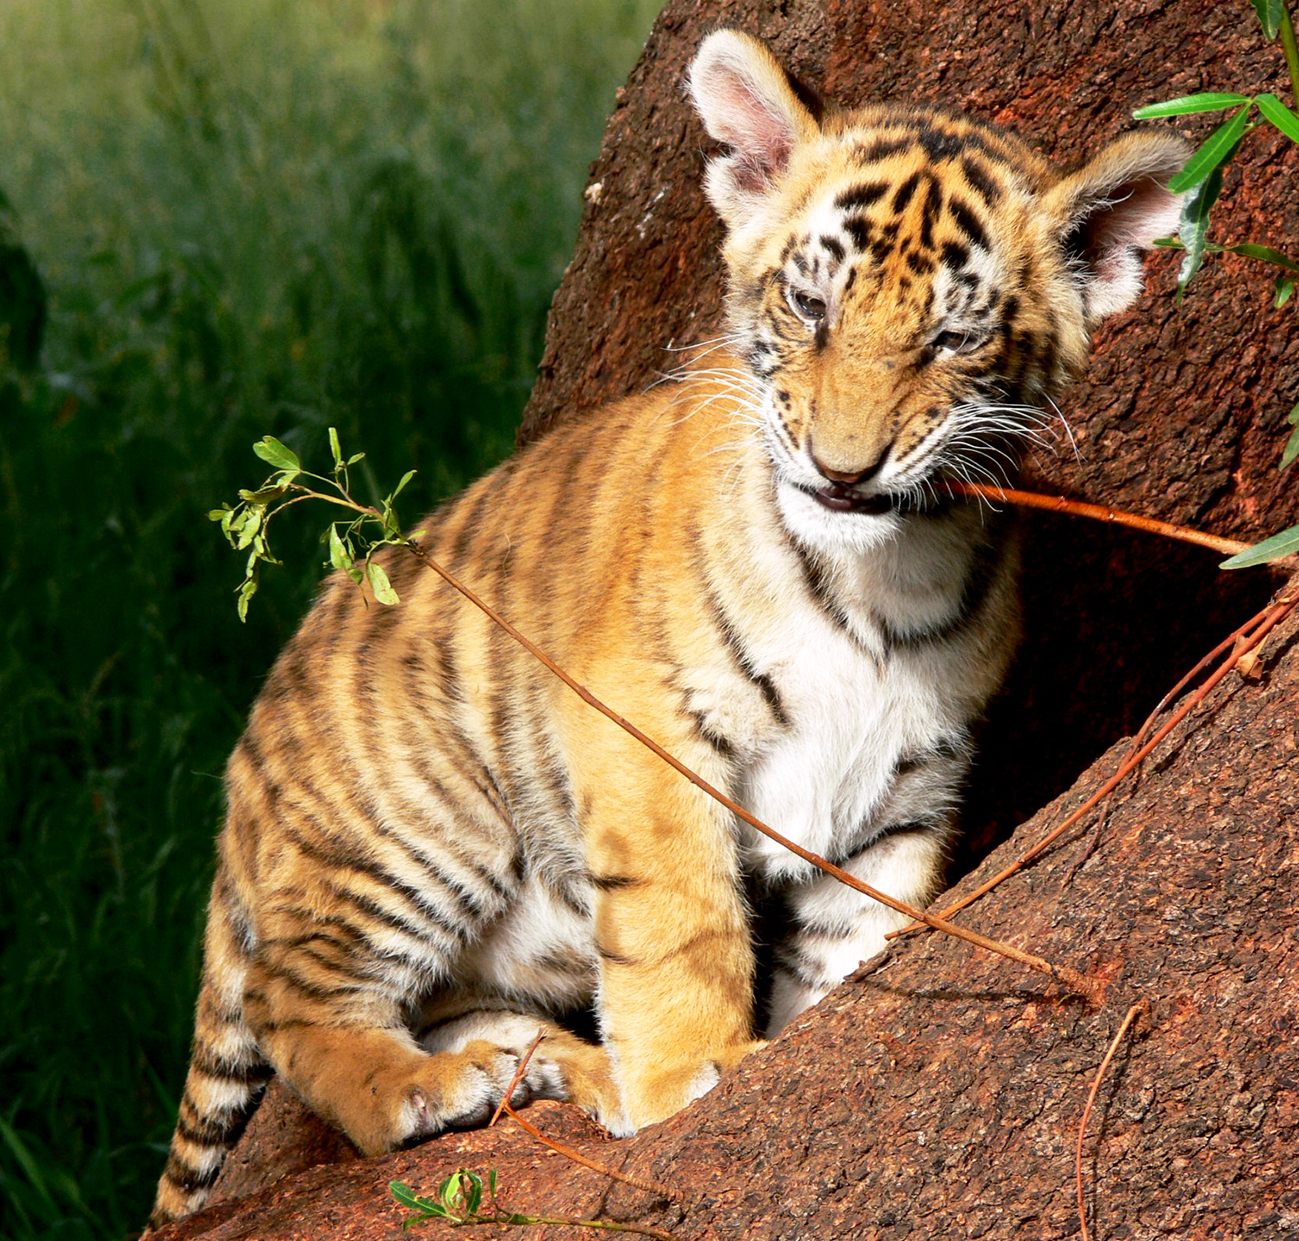 tiger cub playing